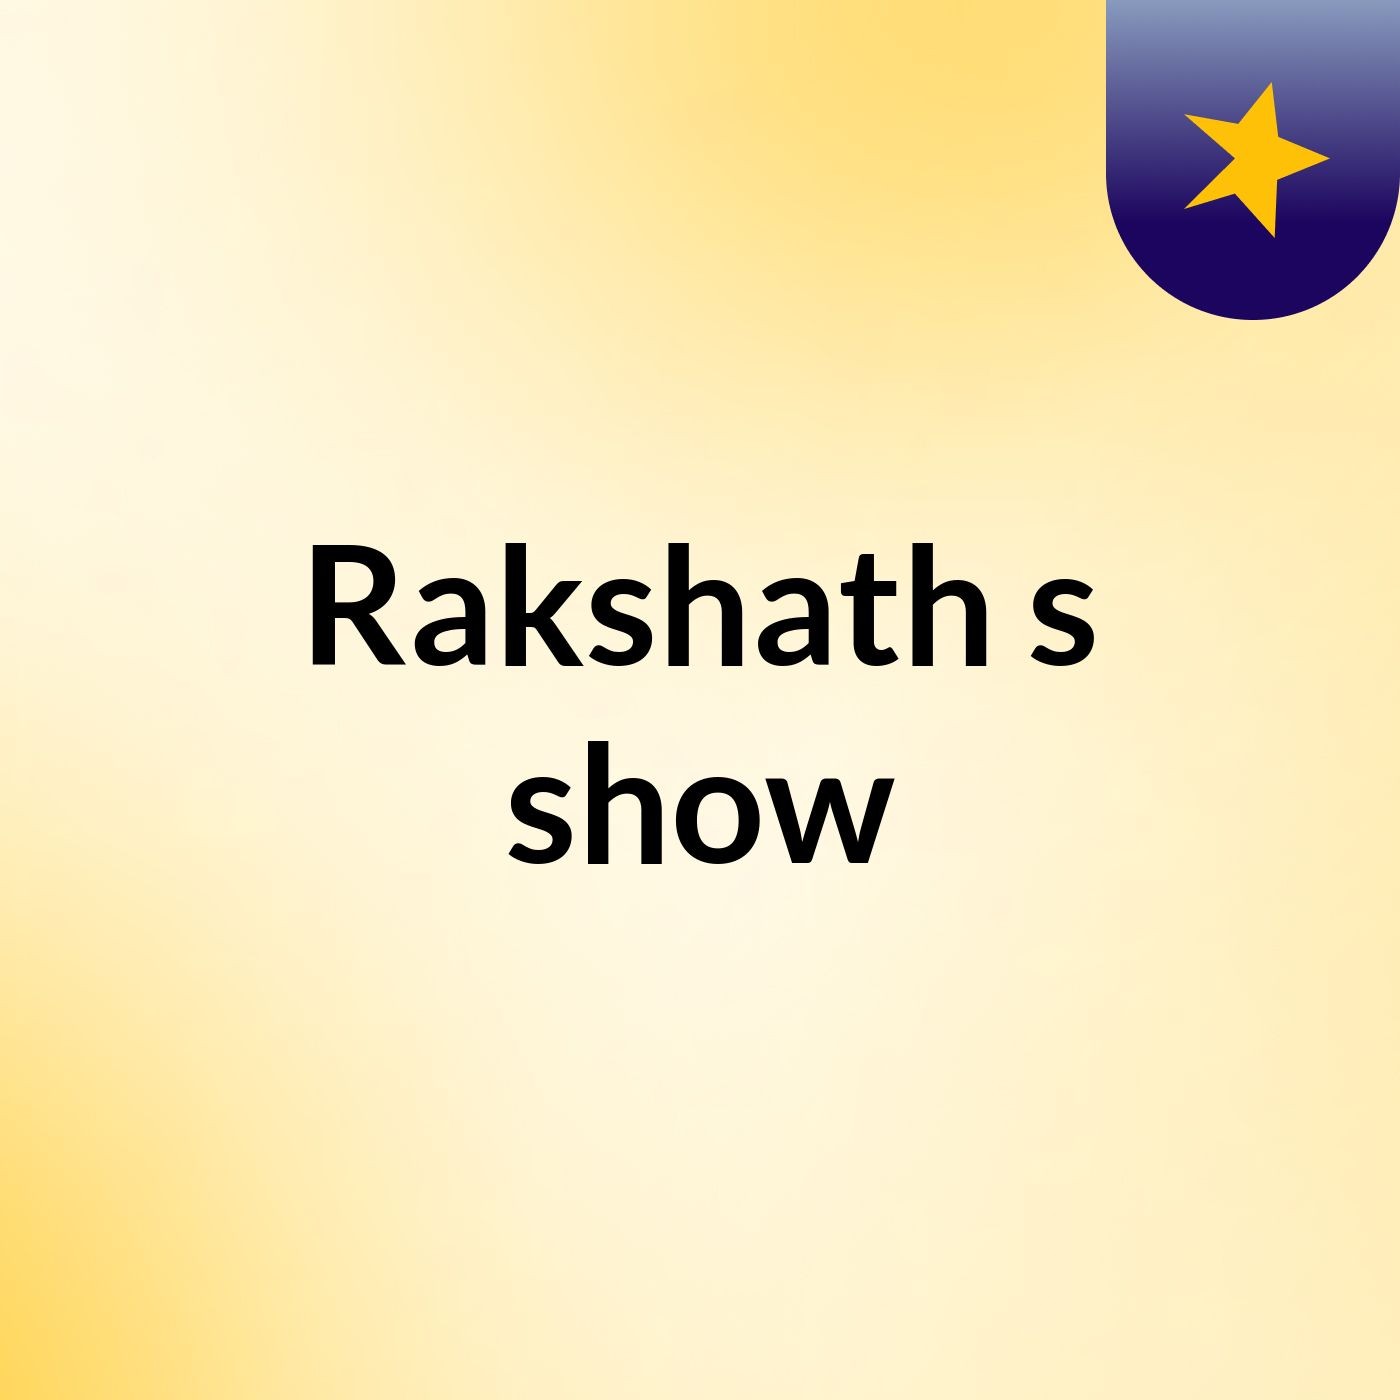 Rakshath's show